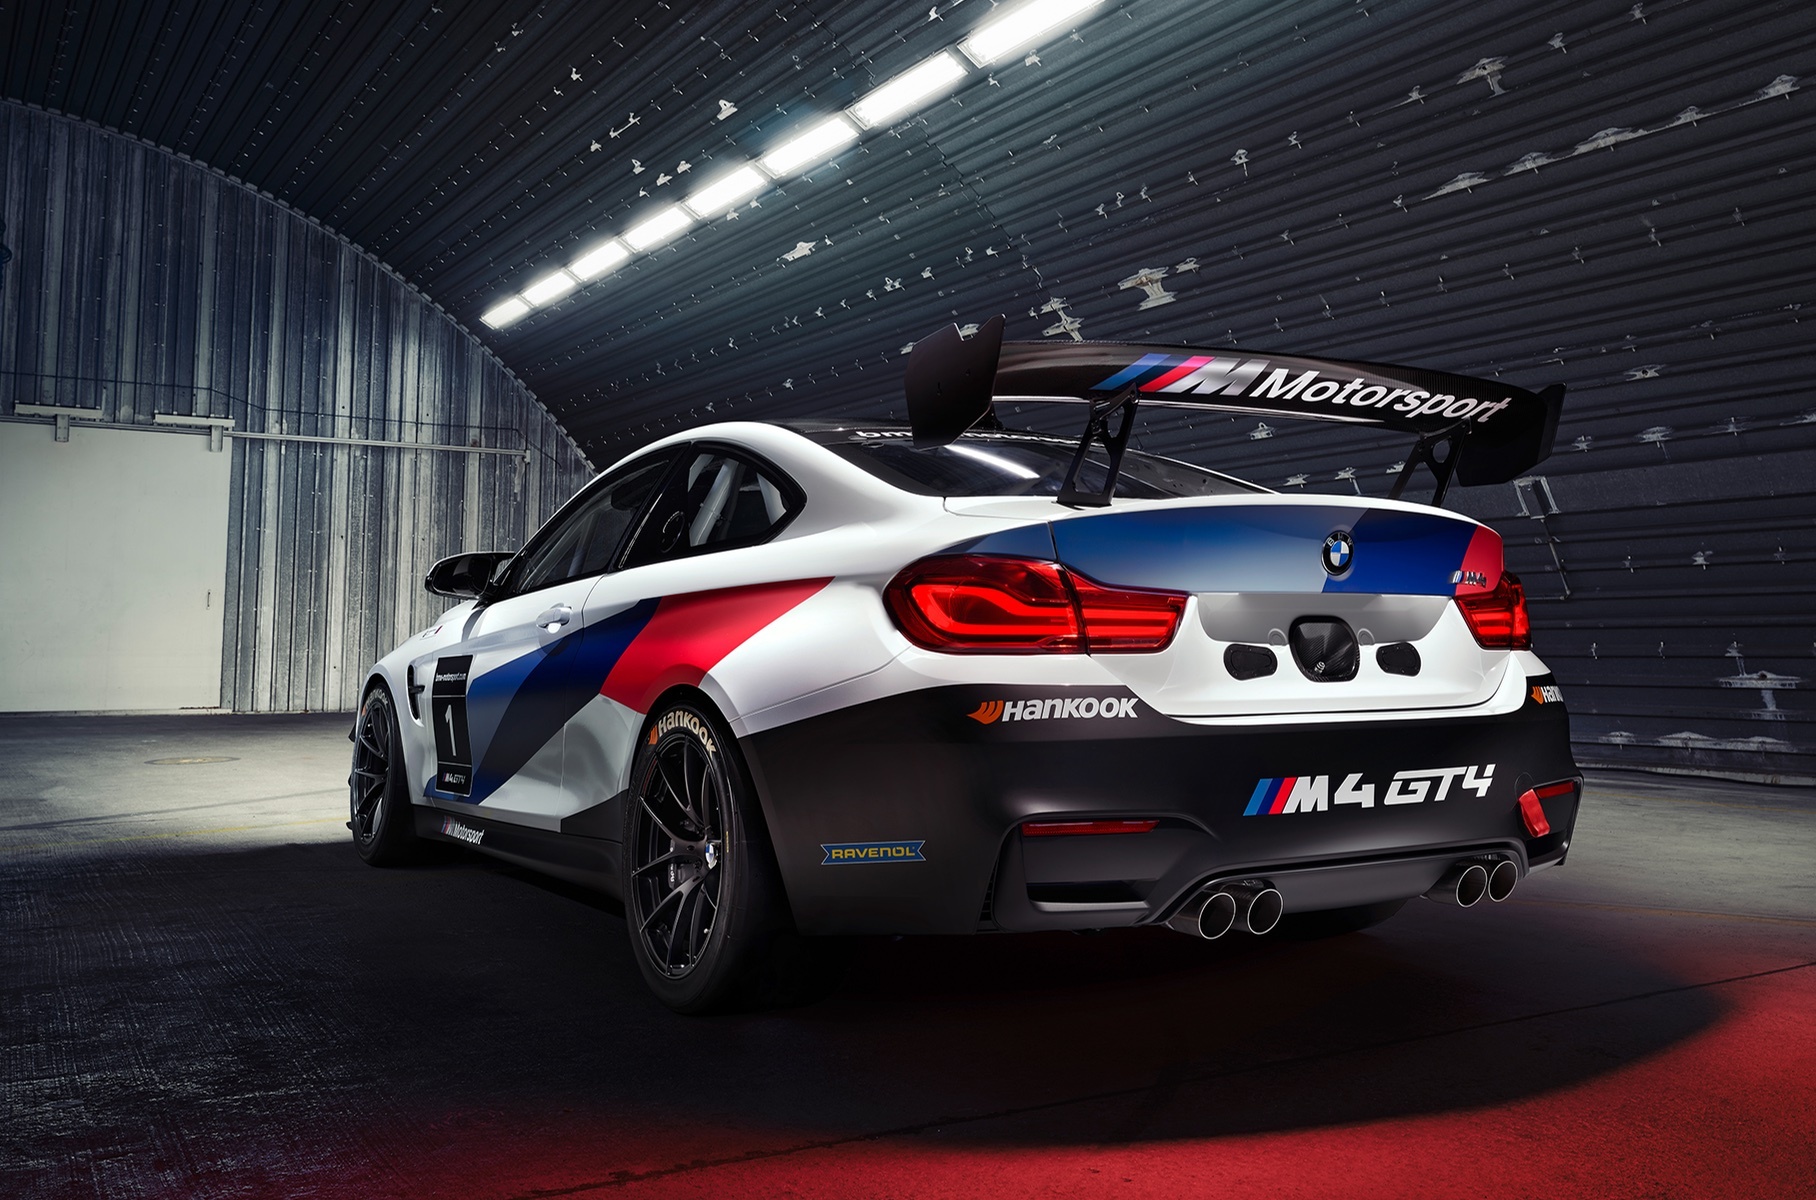 BMW показала первое изображение нового M4 GT4